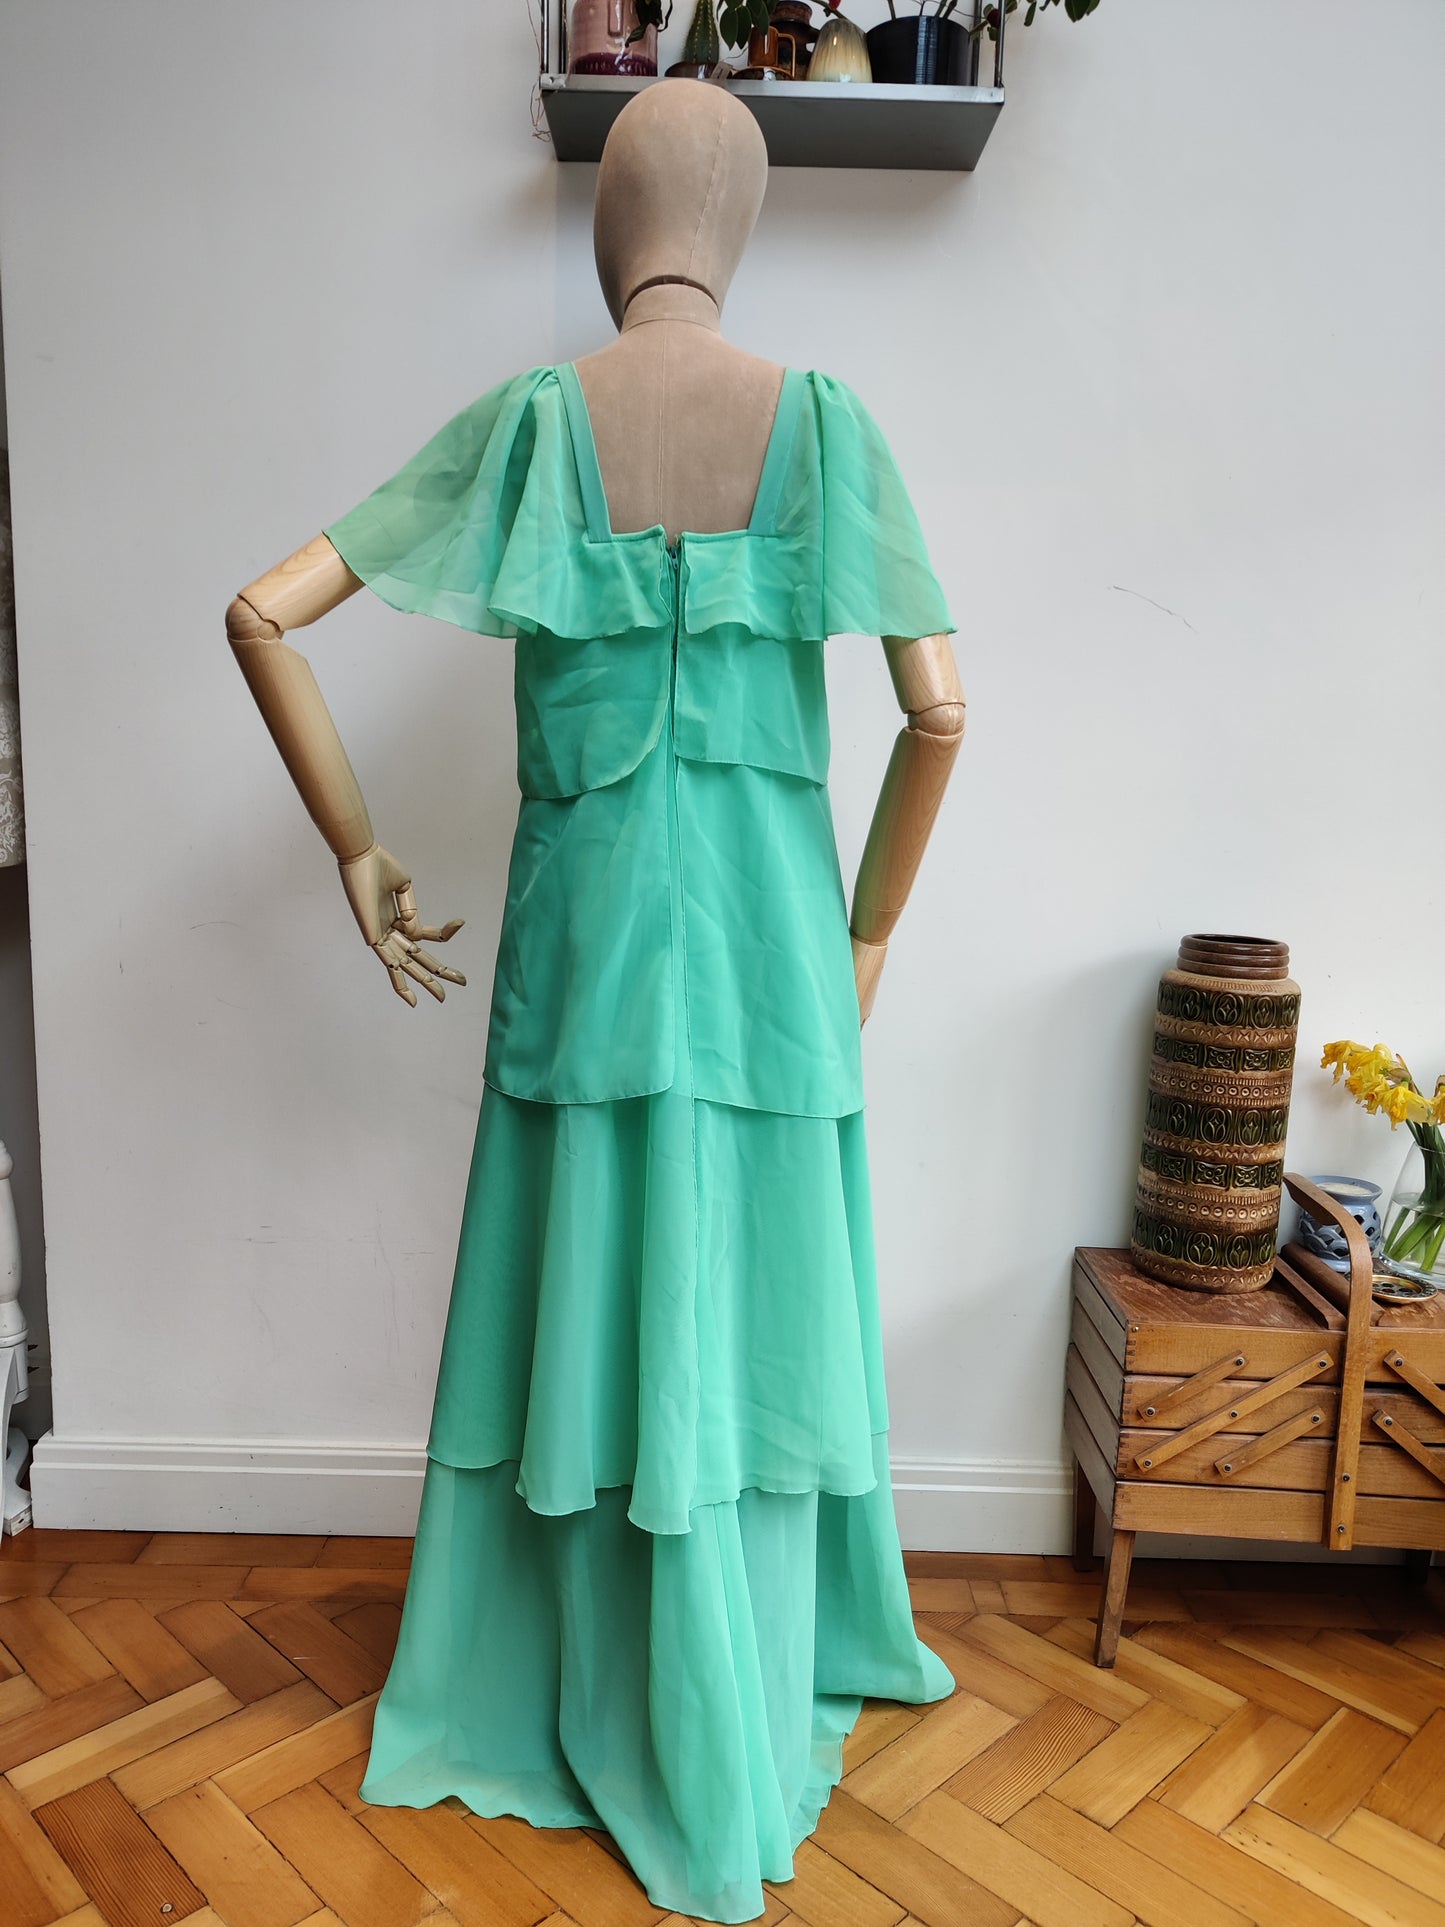 70's romantic maxi dress in mint green.8